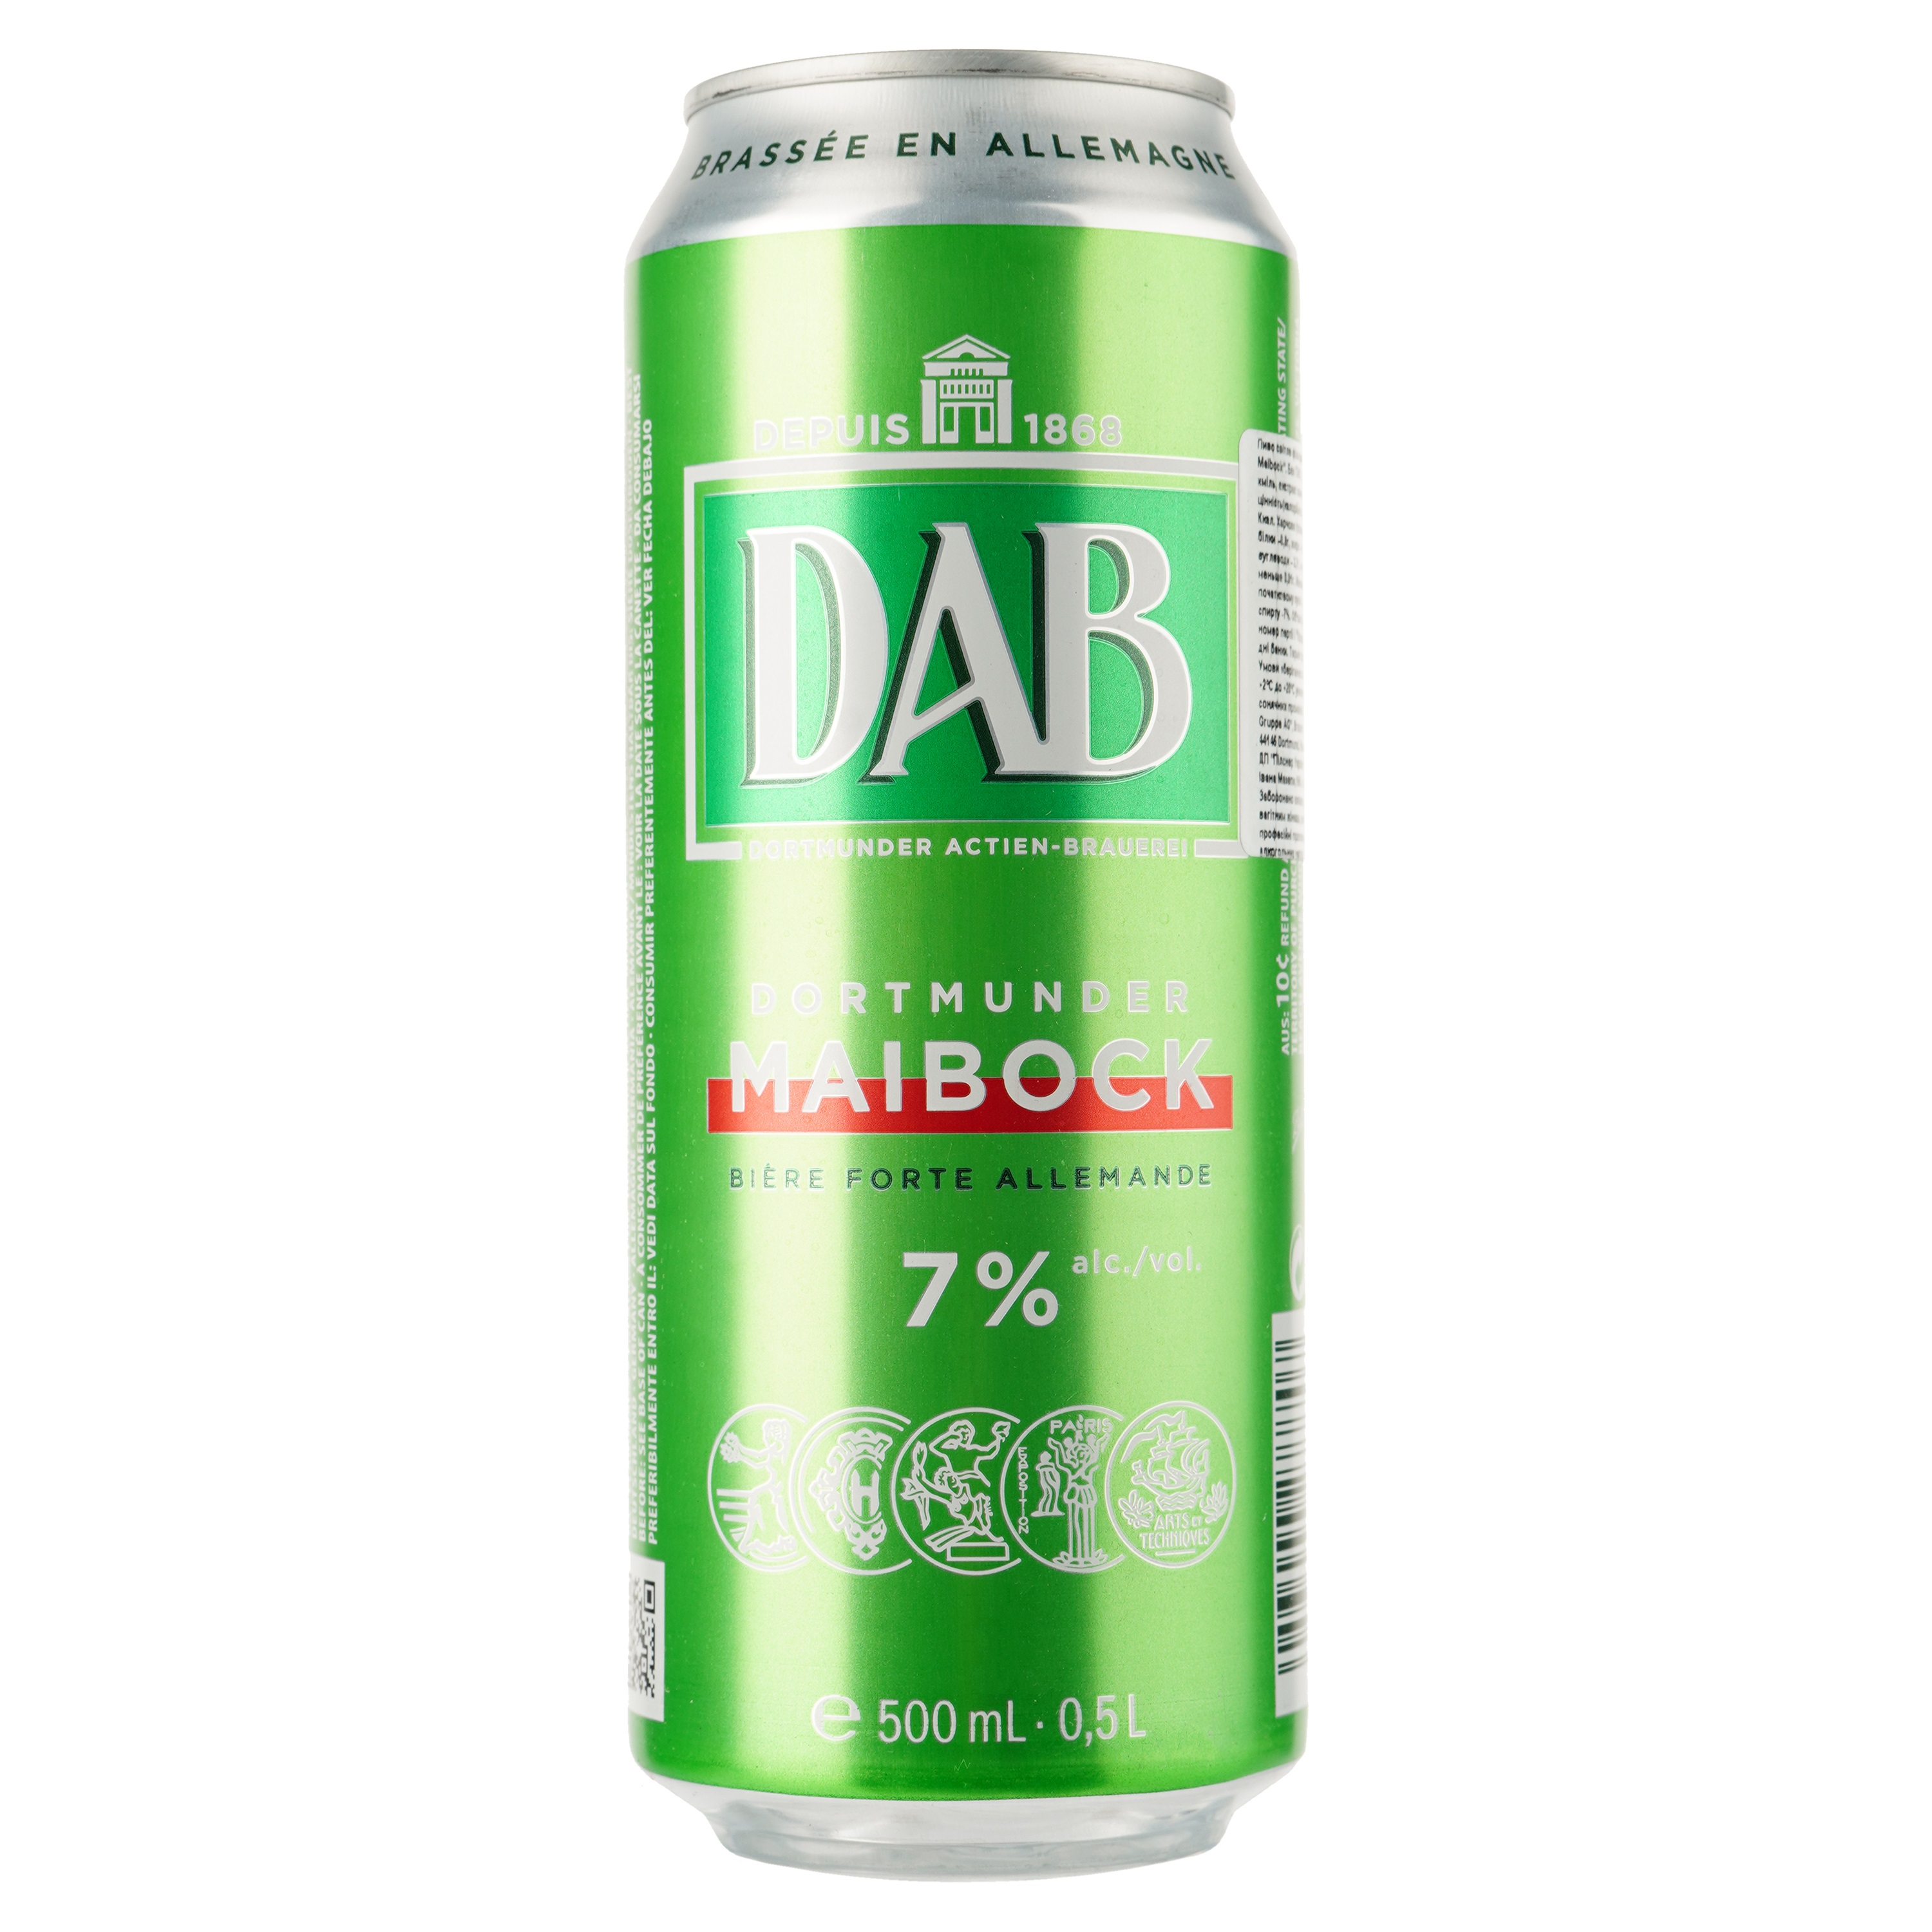 Пиво DAB Maibock світле, 7%, з/б, 0.5 л - фото 1